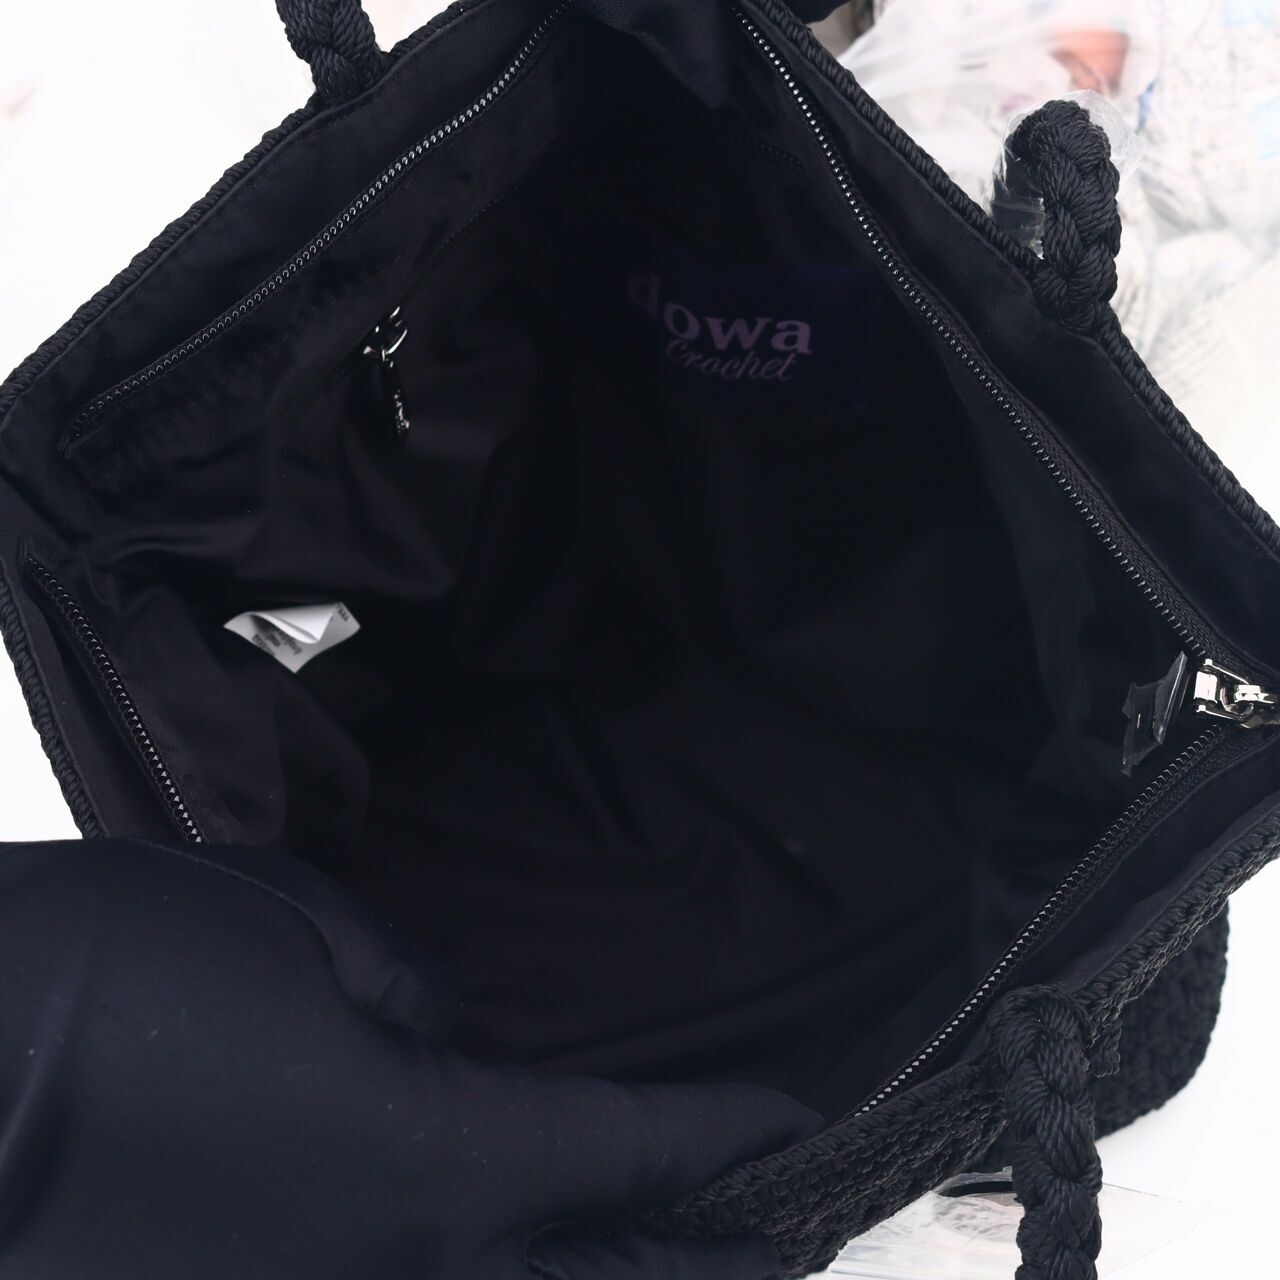 DOWA Black Shoulder Bag